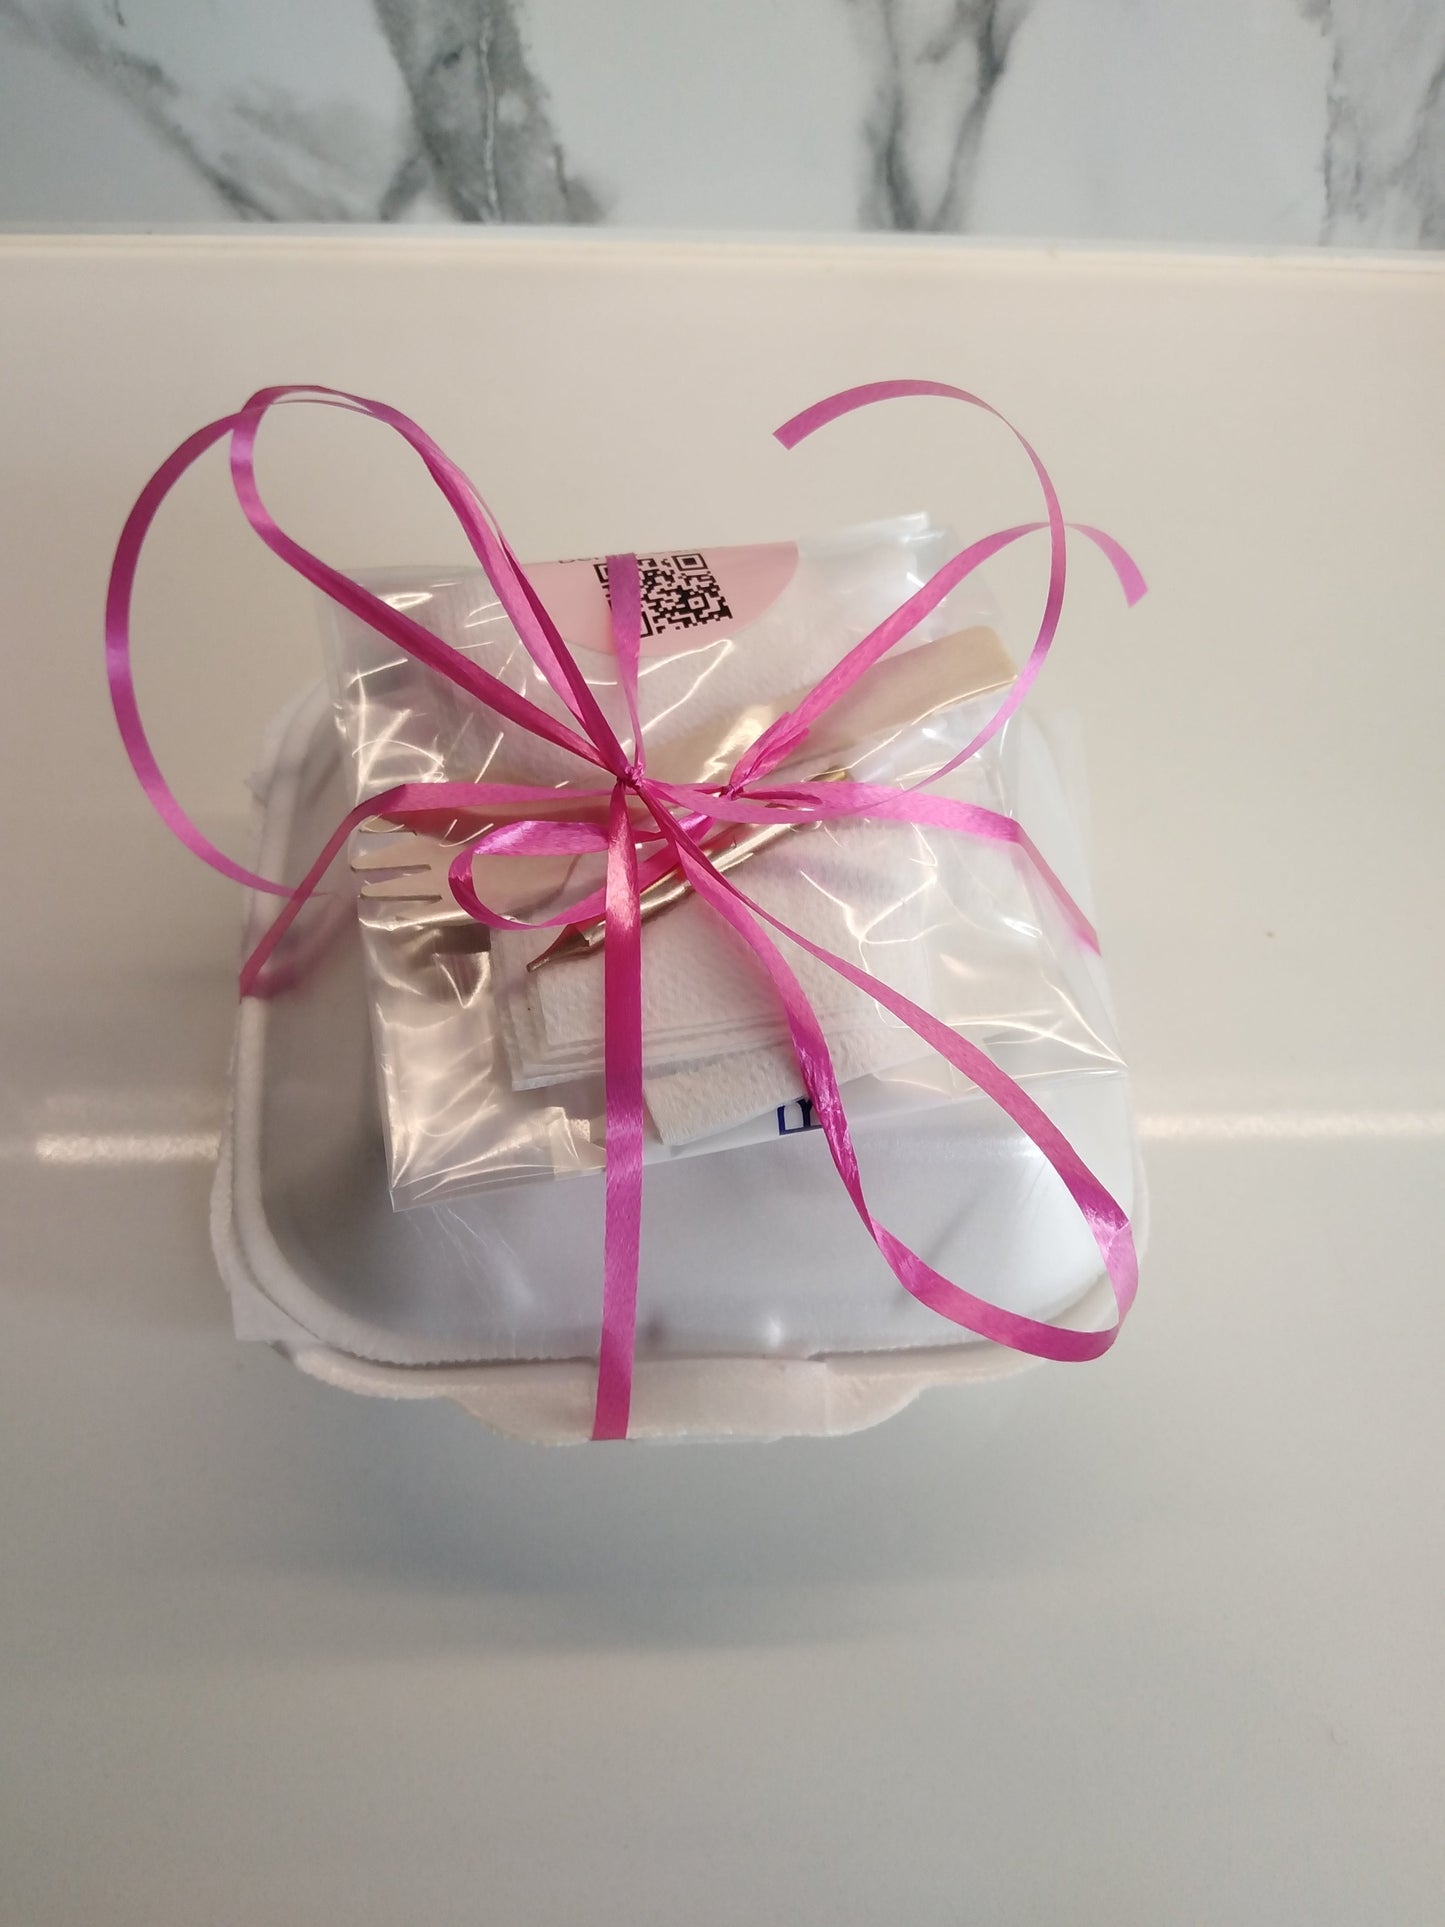 “Happy Holidays” Bento- Lunchbox Cake (White)